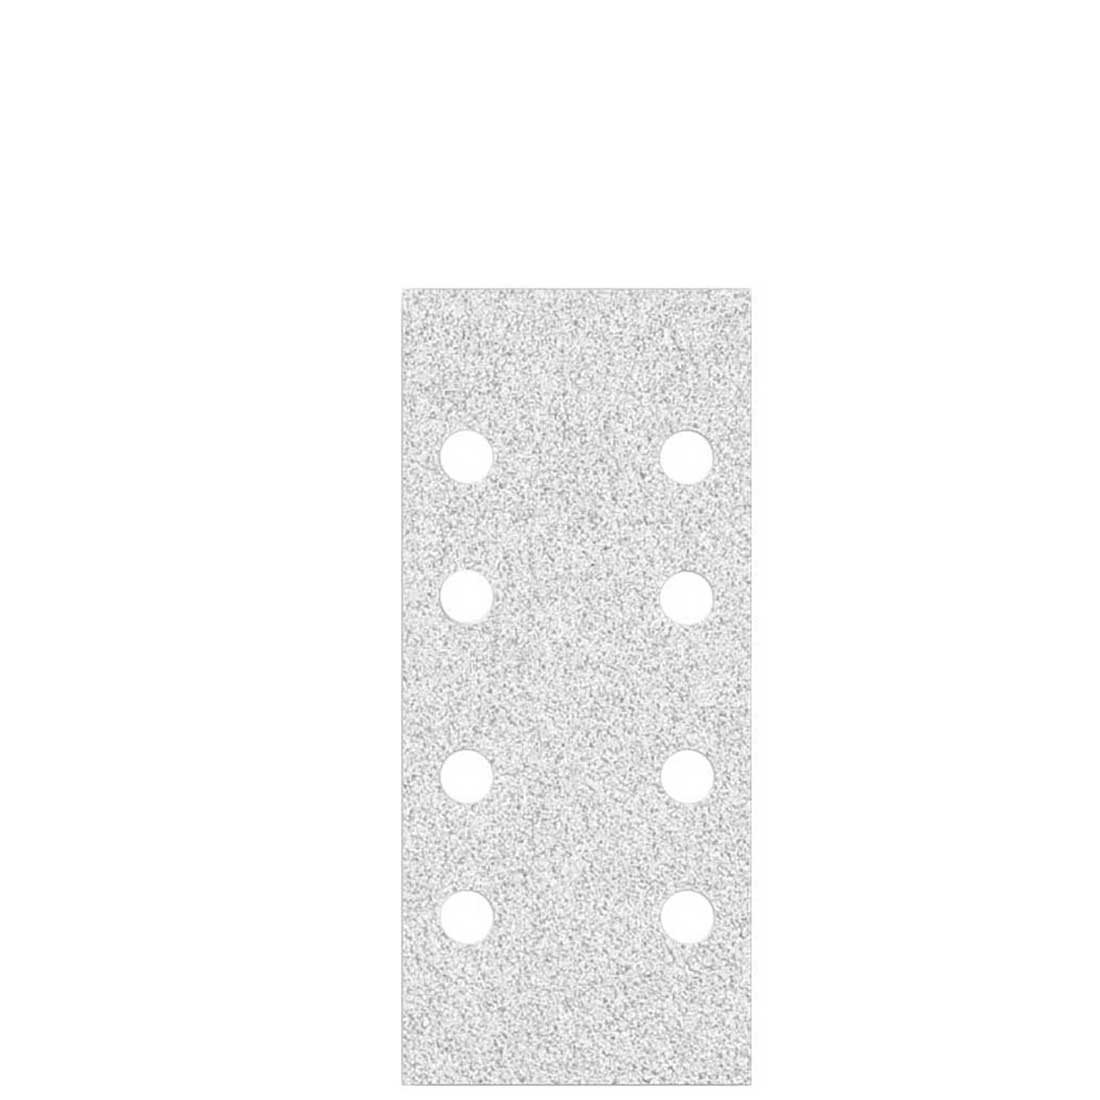 Carte abrasive velcrate MioTools per levigatrici orbitali, G40–400, 186 x 93 mm / 8 fori / corindone normale con stearato